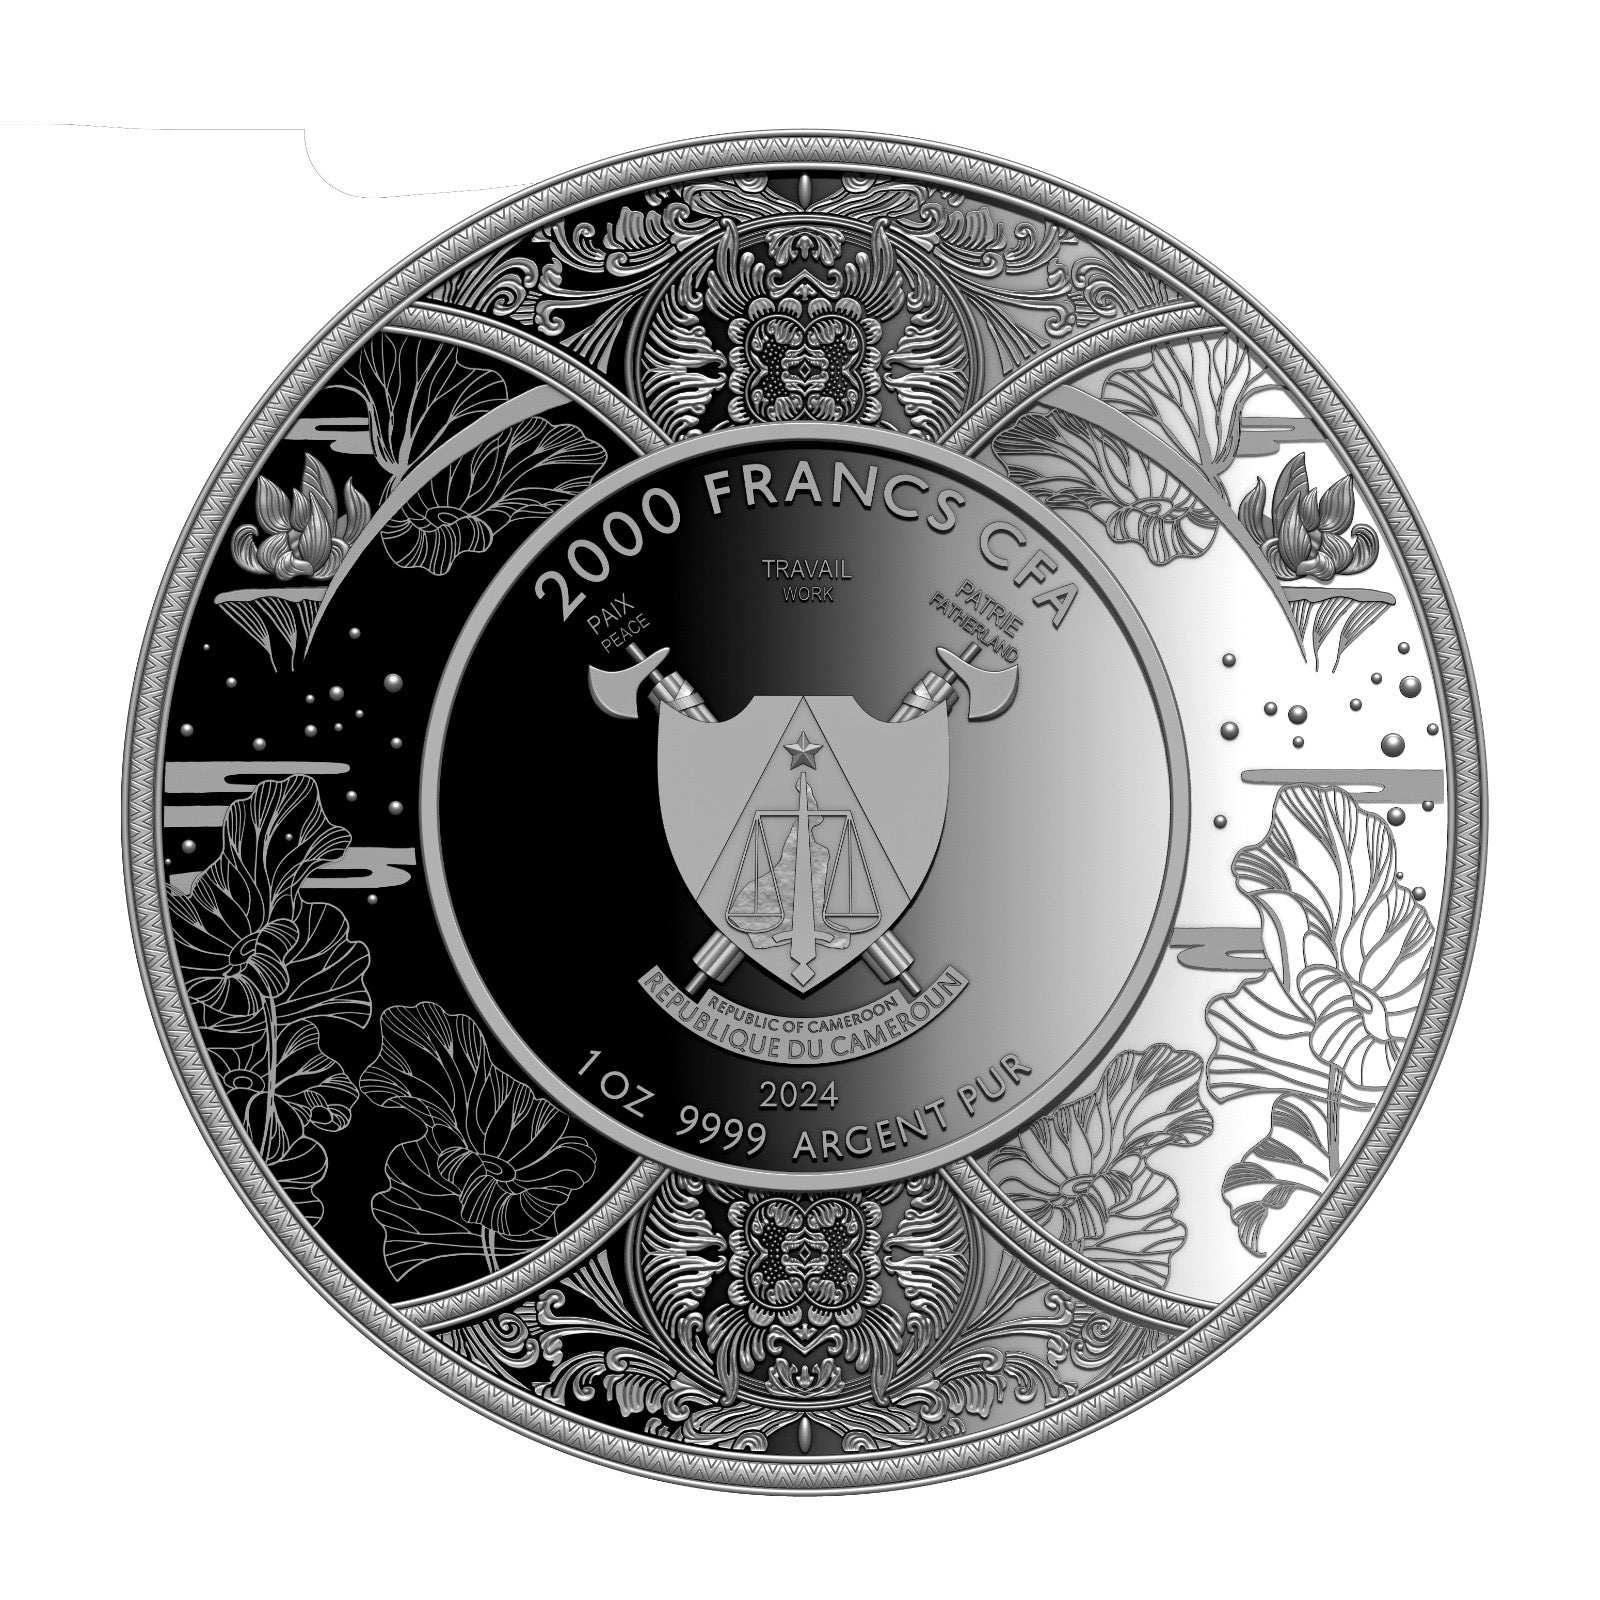 Durga 2024 Cameroon Silver coin 2000 Francs CFA